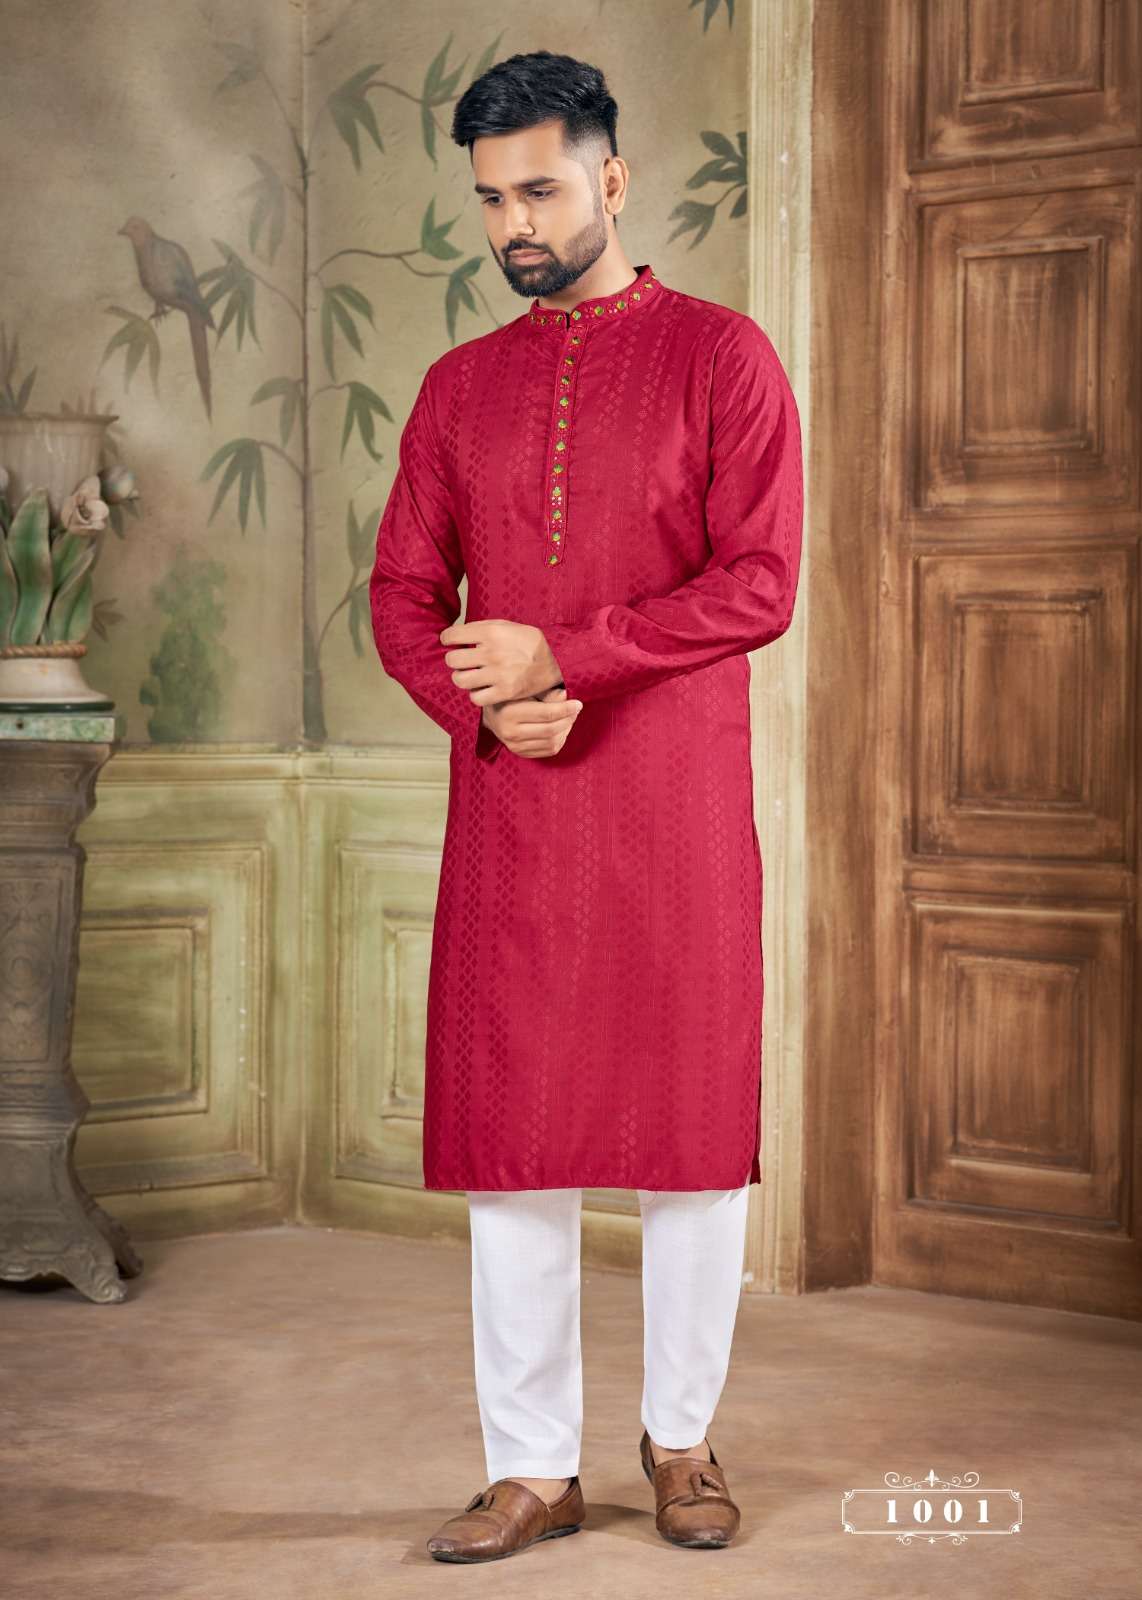 mens wear kurta pyjama in affordable price royal men vol 12 mens simple elegant kurta pyjama collection mens wear 